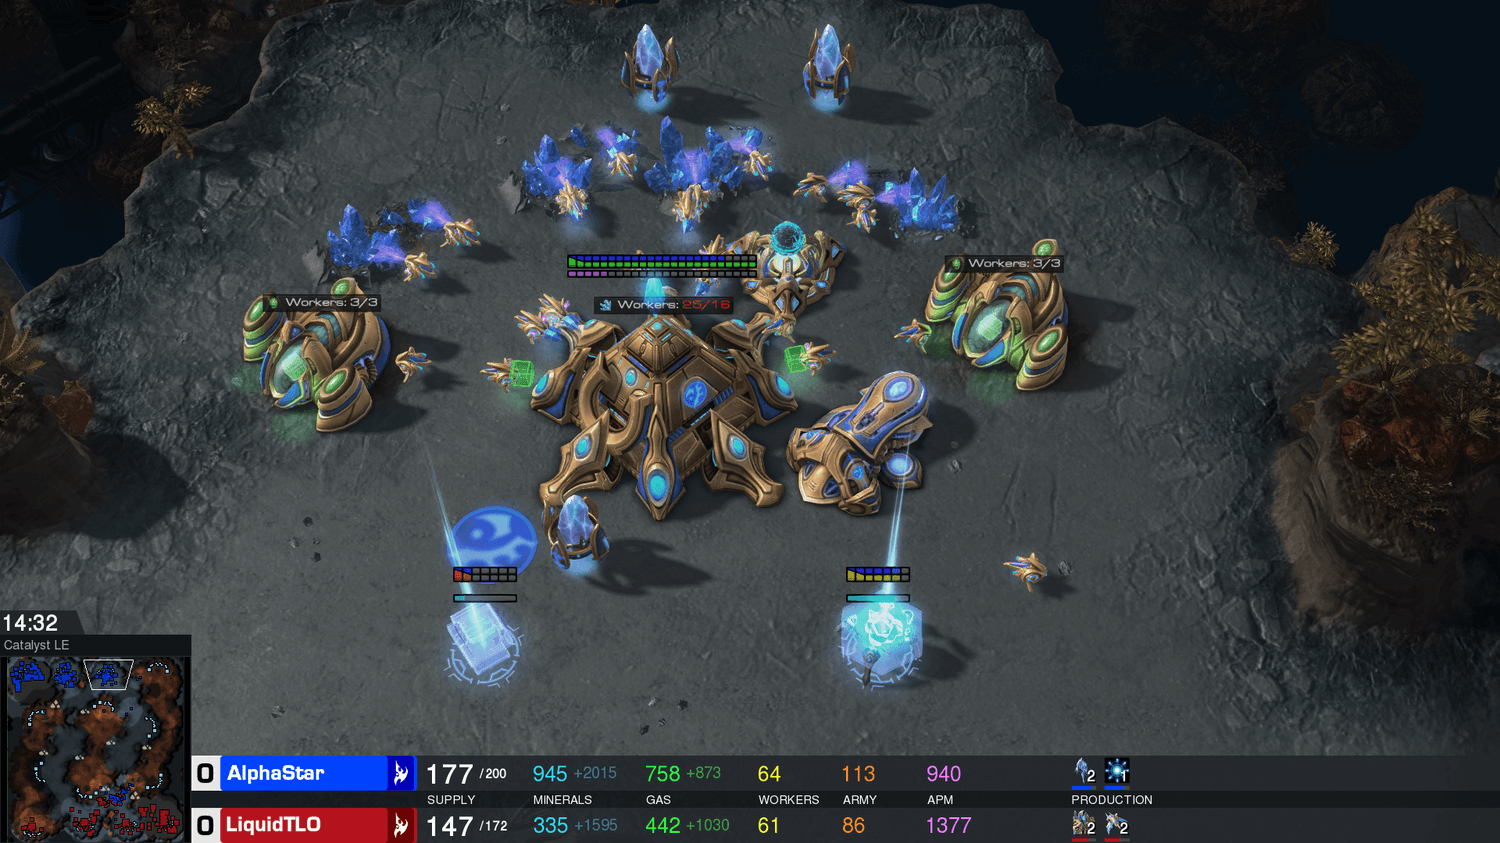 A human player finally beat DeepMind's AlphaStar AI at StarCraft II